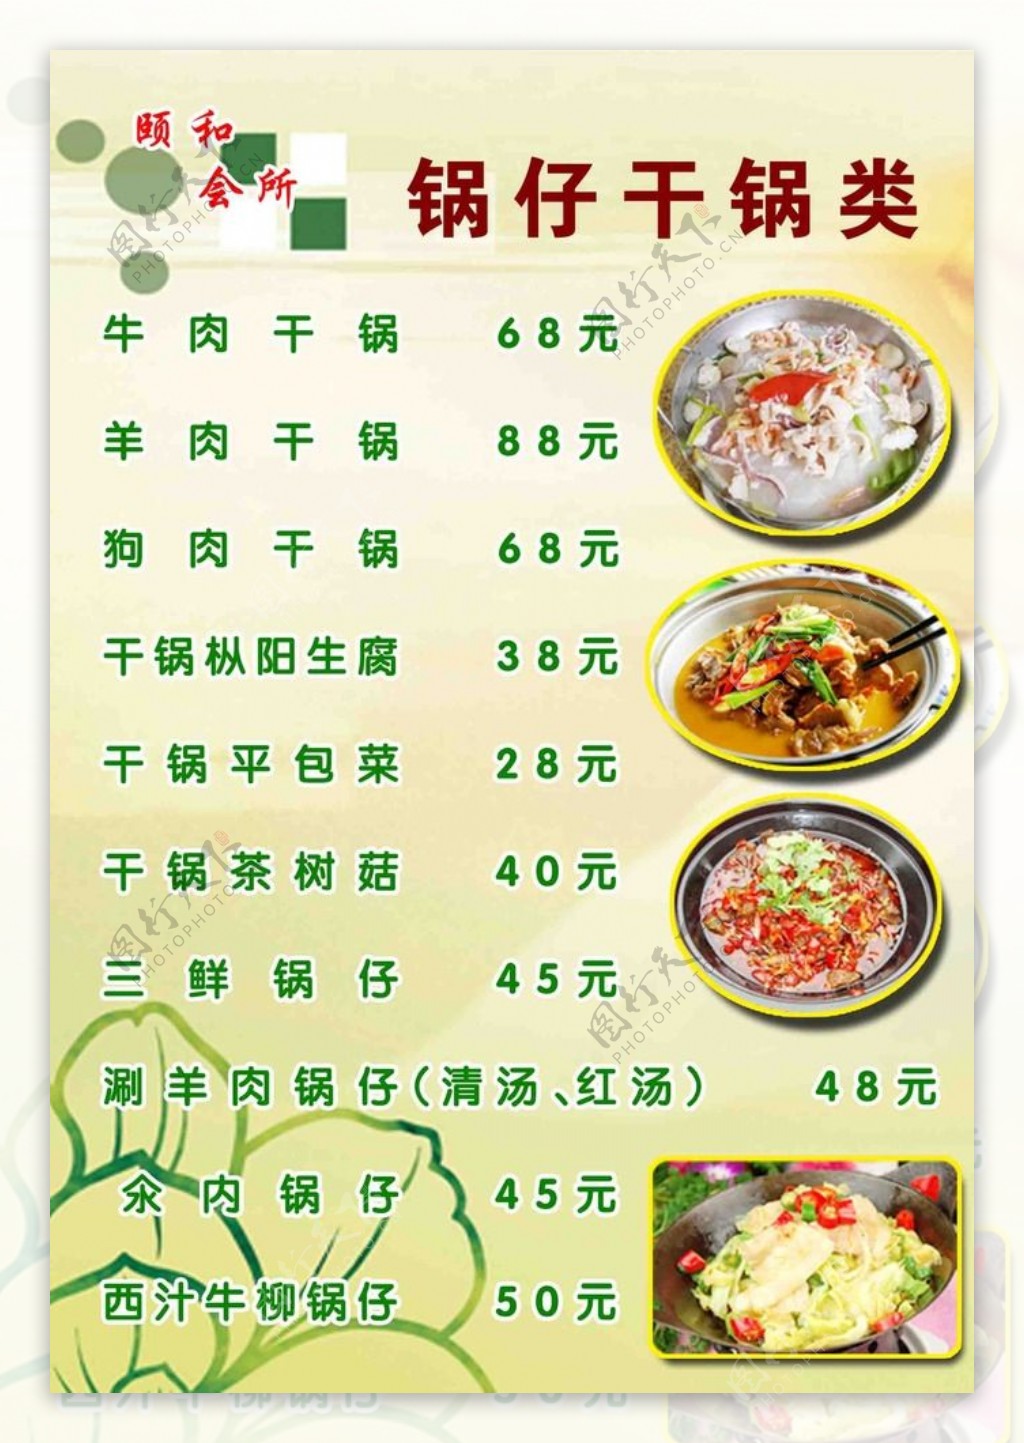 干锅类价格表彩页版面内容素材